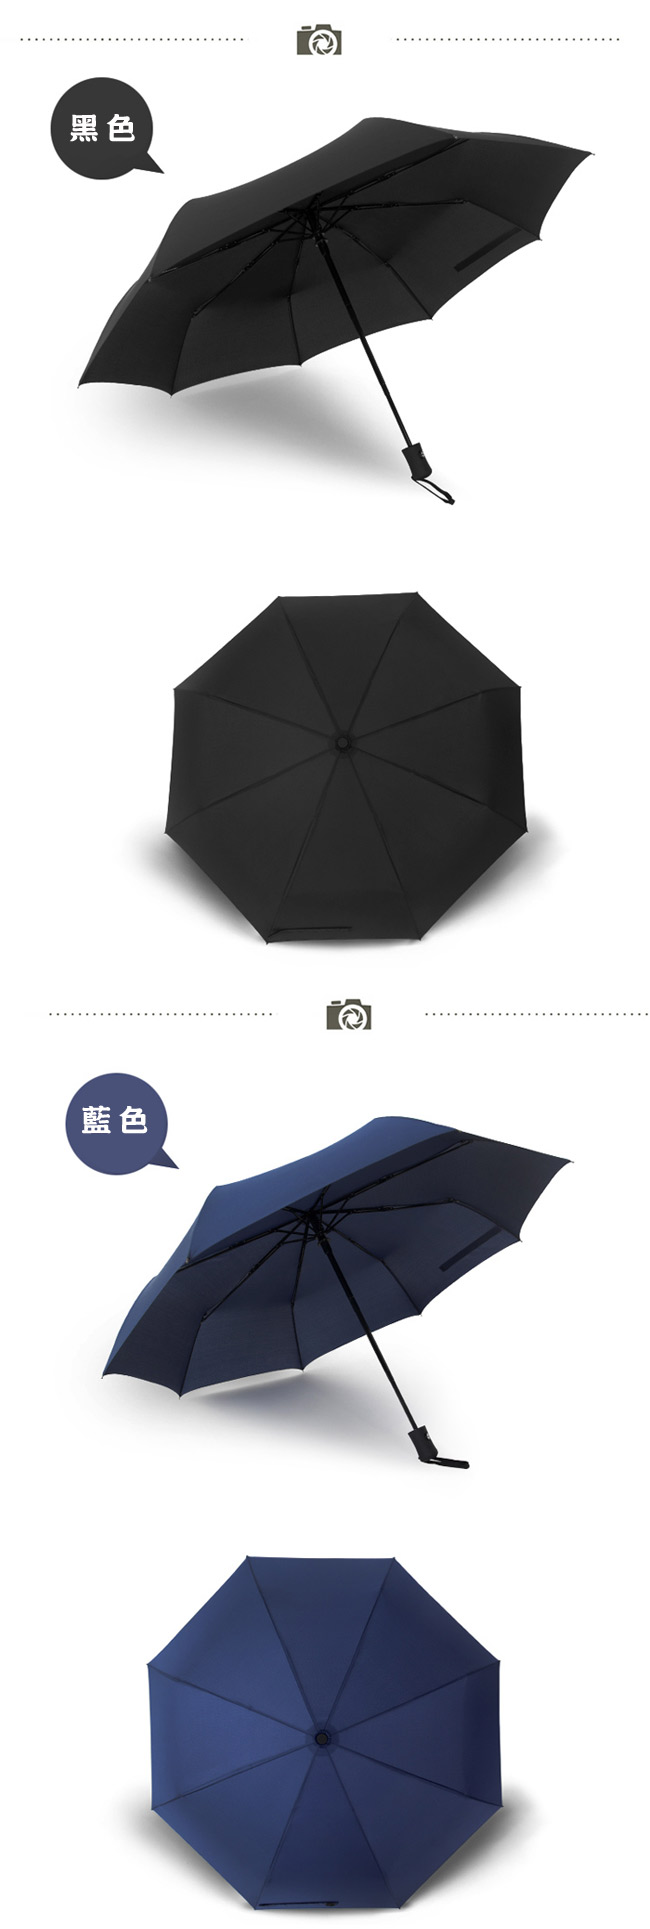 PUSH! 好聚好傘, 自動傘雨傘遮陽傘晴雨傘三摺傘I28-1藍色